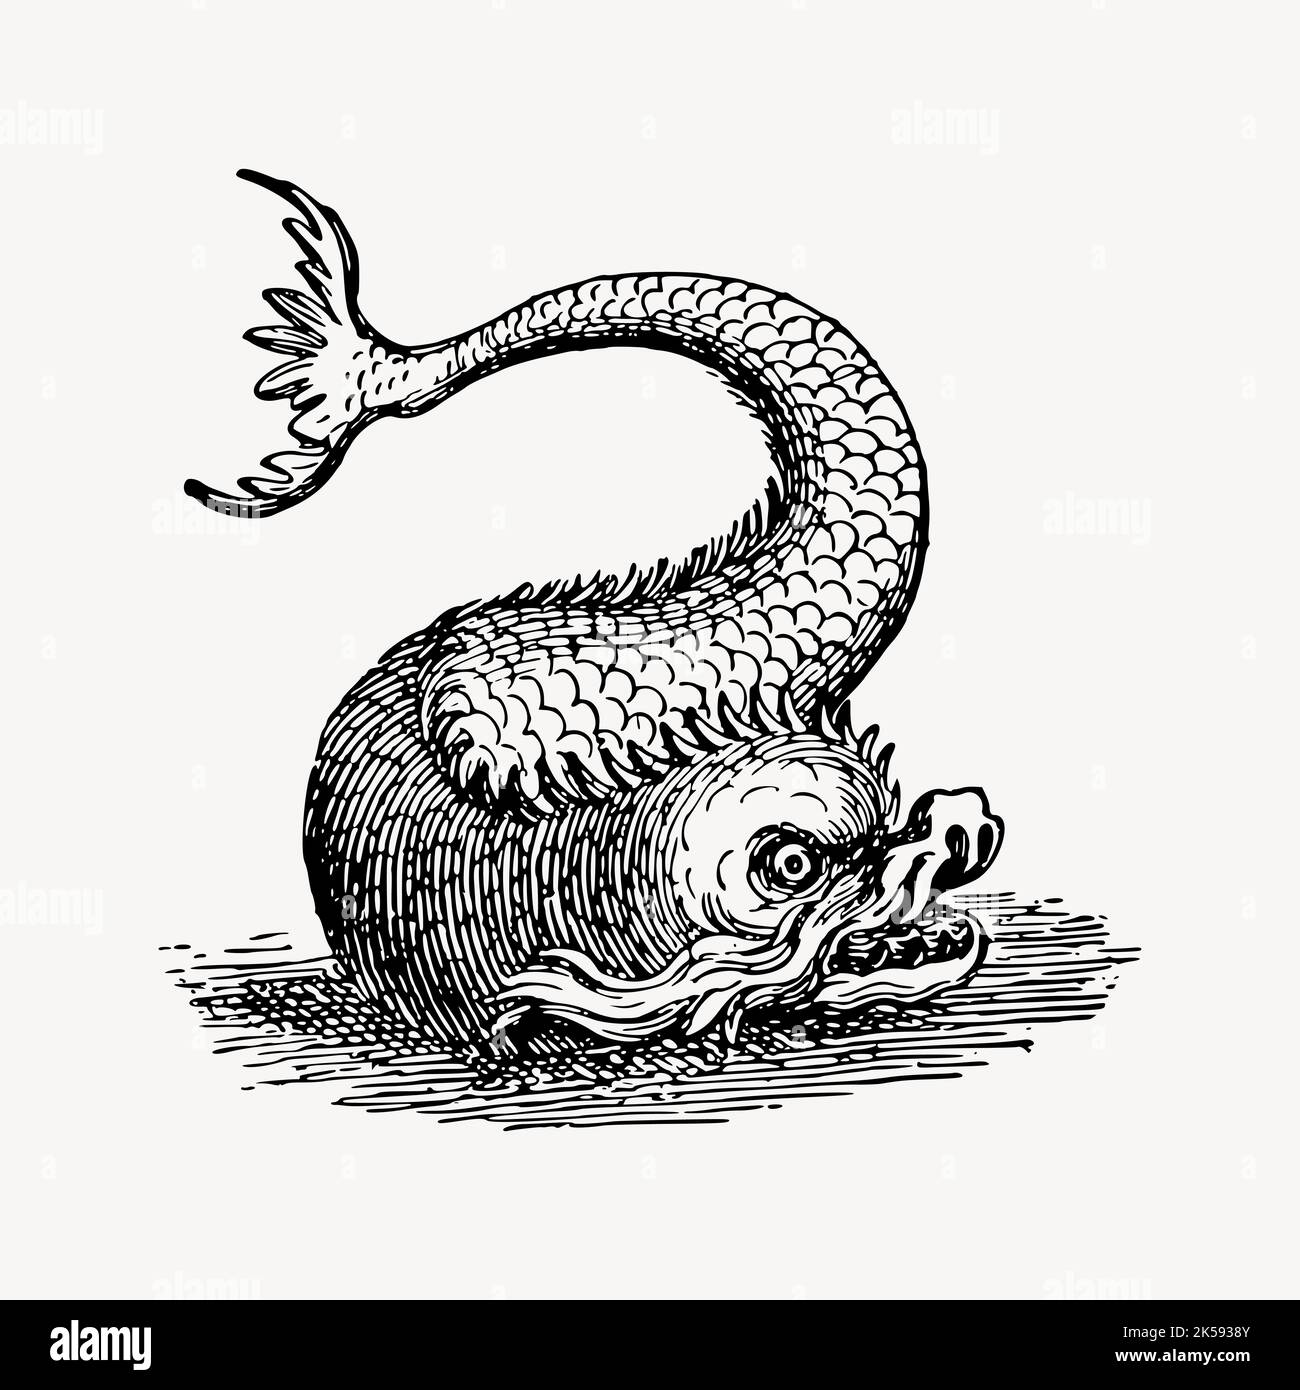 Disegno di mostro di pesce, vettore di illustrazione di creatura mitica vintage. Illustrazione Vettoriale